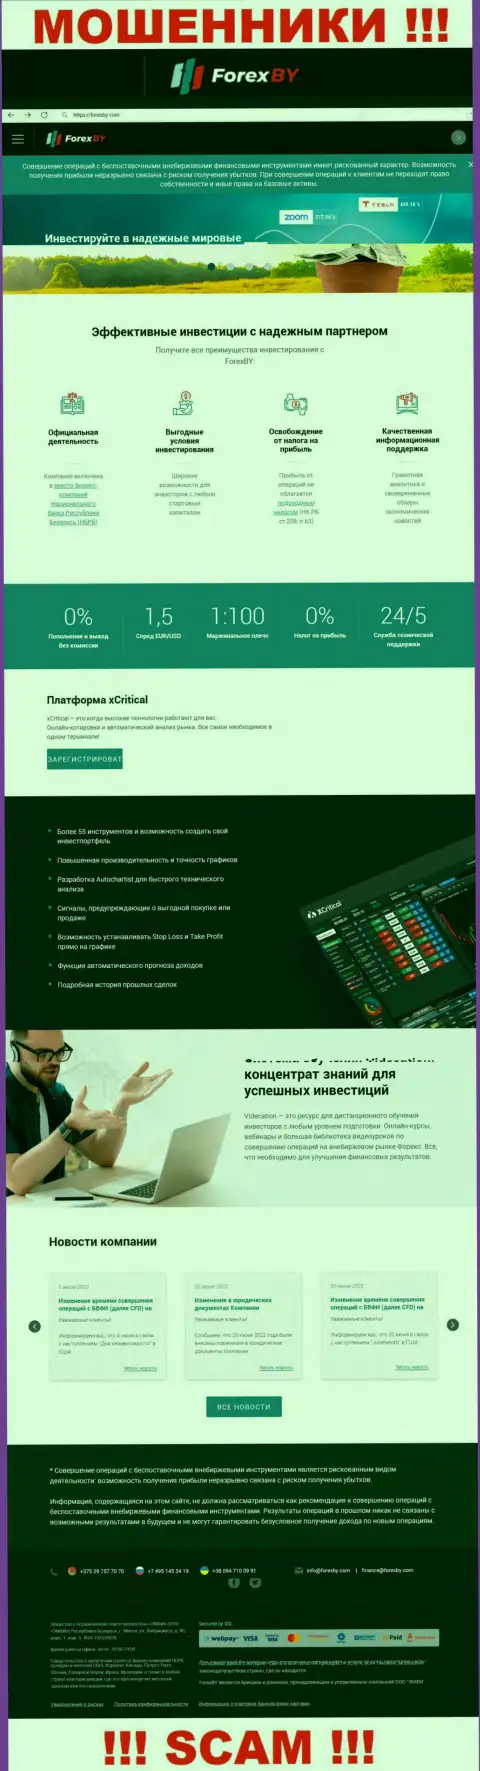 Официальный веб-портал мошенников ООО ЭМФИ